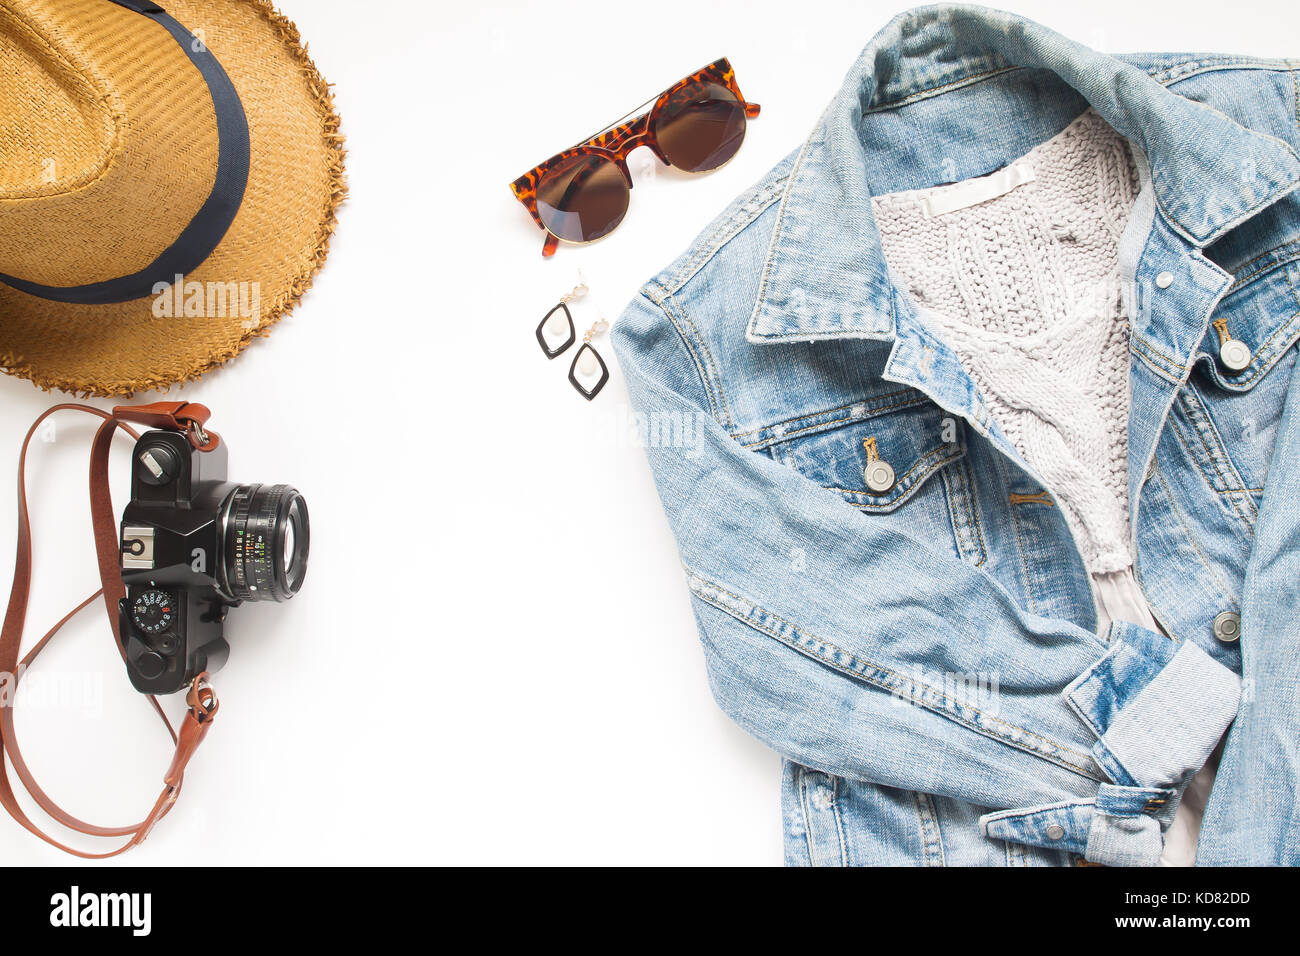 Creative laici piana di articoli da viaggio con fotocamera e giacca donna jeans su sfondo bianco Foto Stock